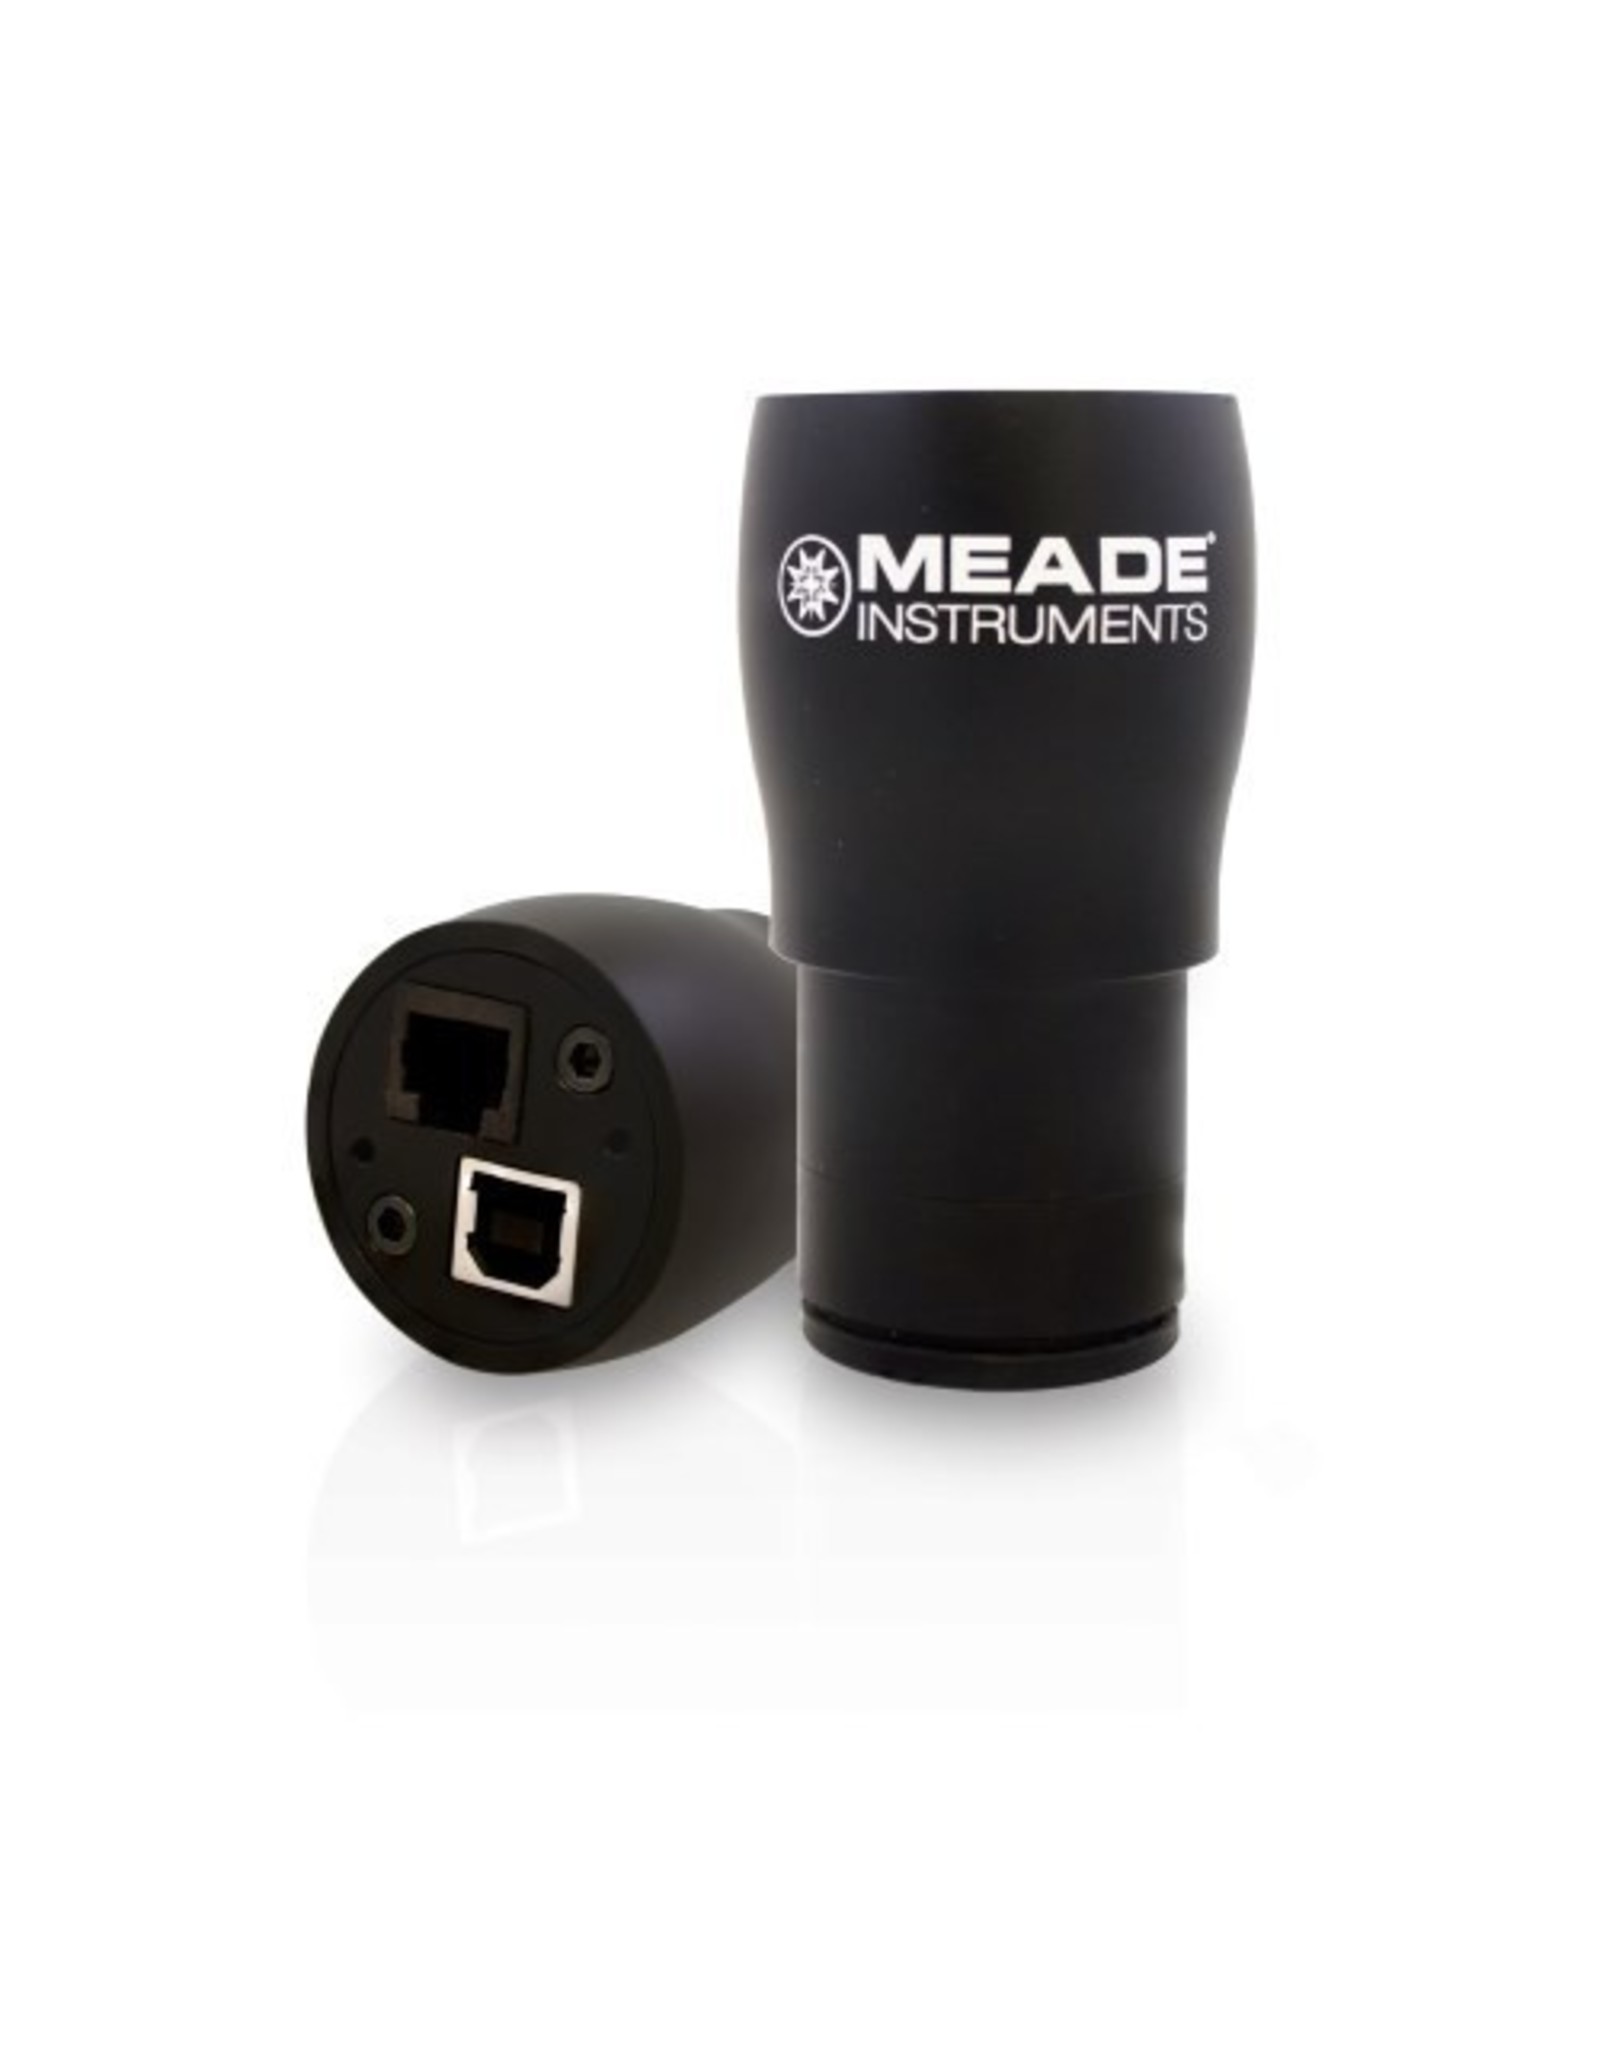 Meade LPI-G monochrome camera